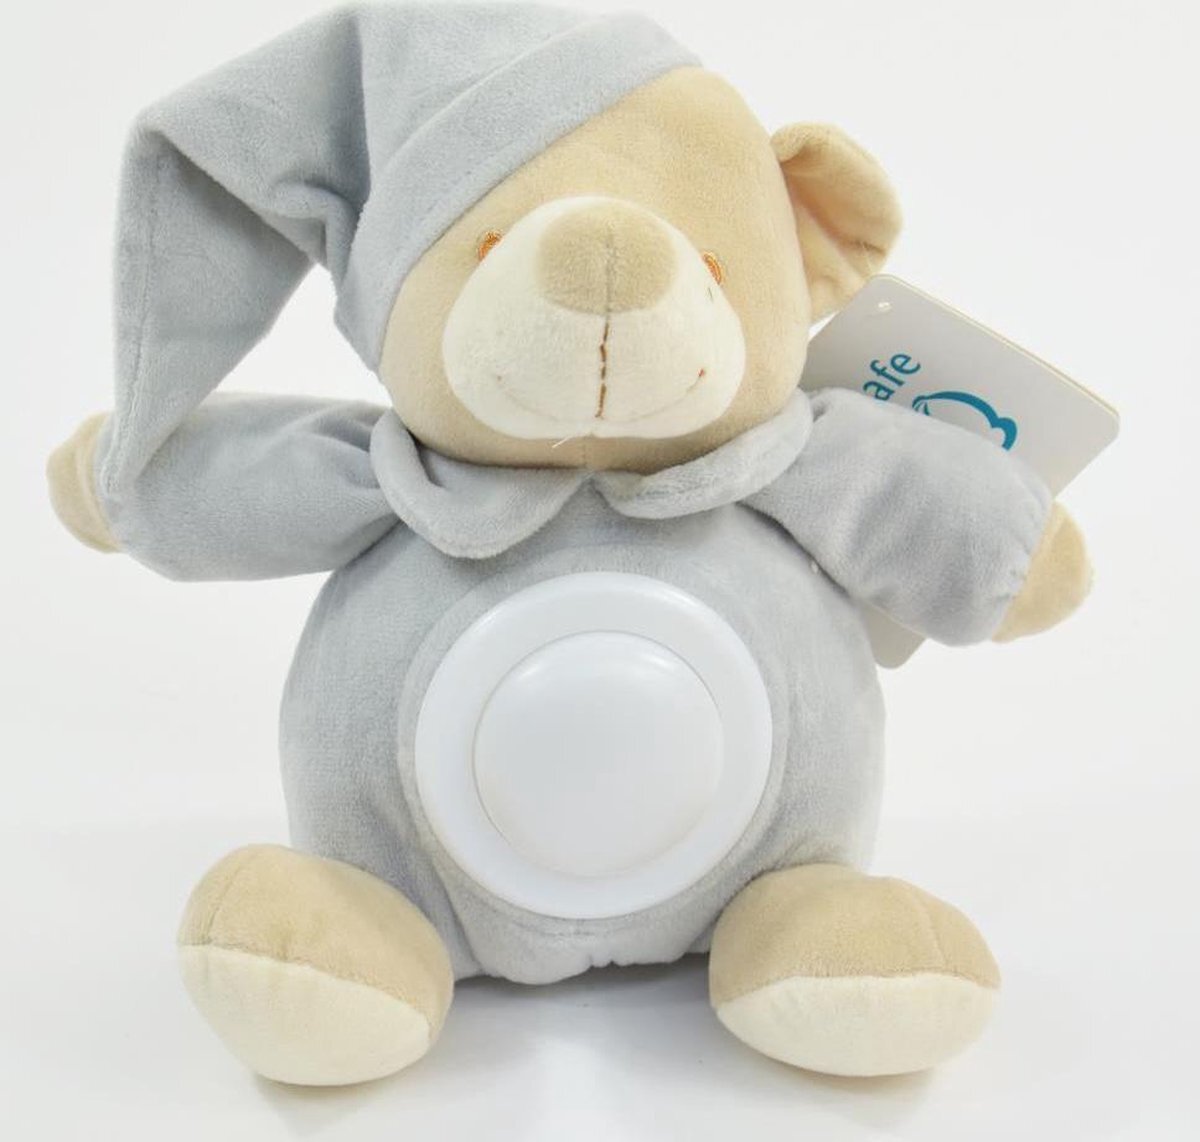 Kogler Kögler - Nachtlamp voor baby's - Baby Knuffel met nachtlampje incl. batterijen - Led - Blauw - voor Kinderkamer - Babykamer